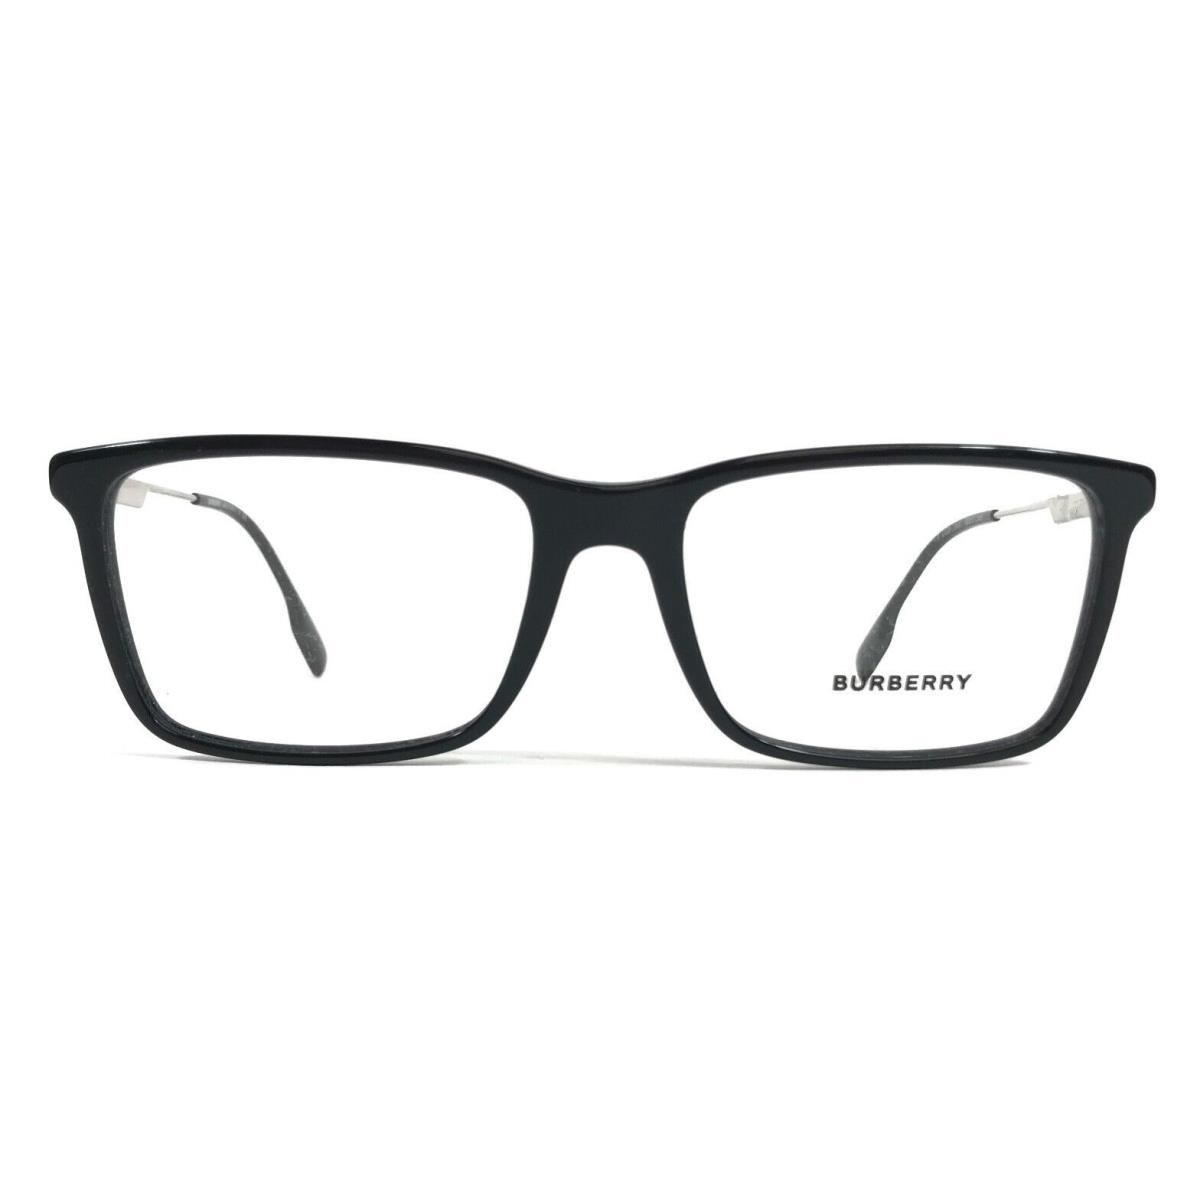 Burberry Eyeglasses Frames B2339 3001 Harrington Black Silver Full Rim 55-17-145